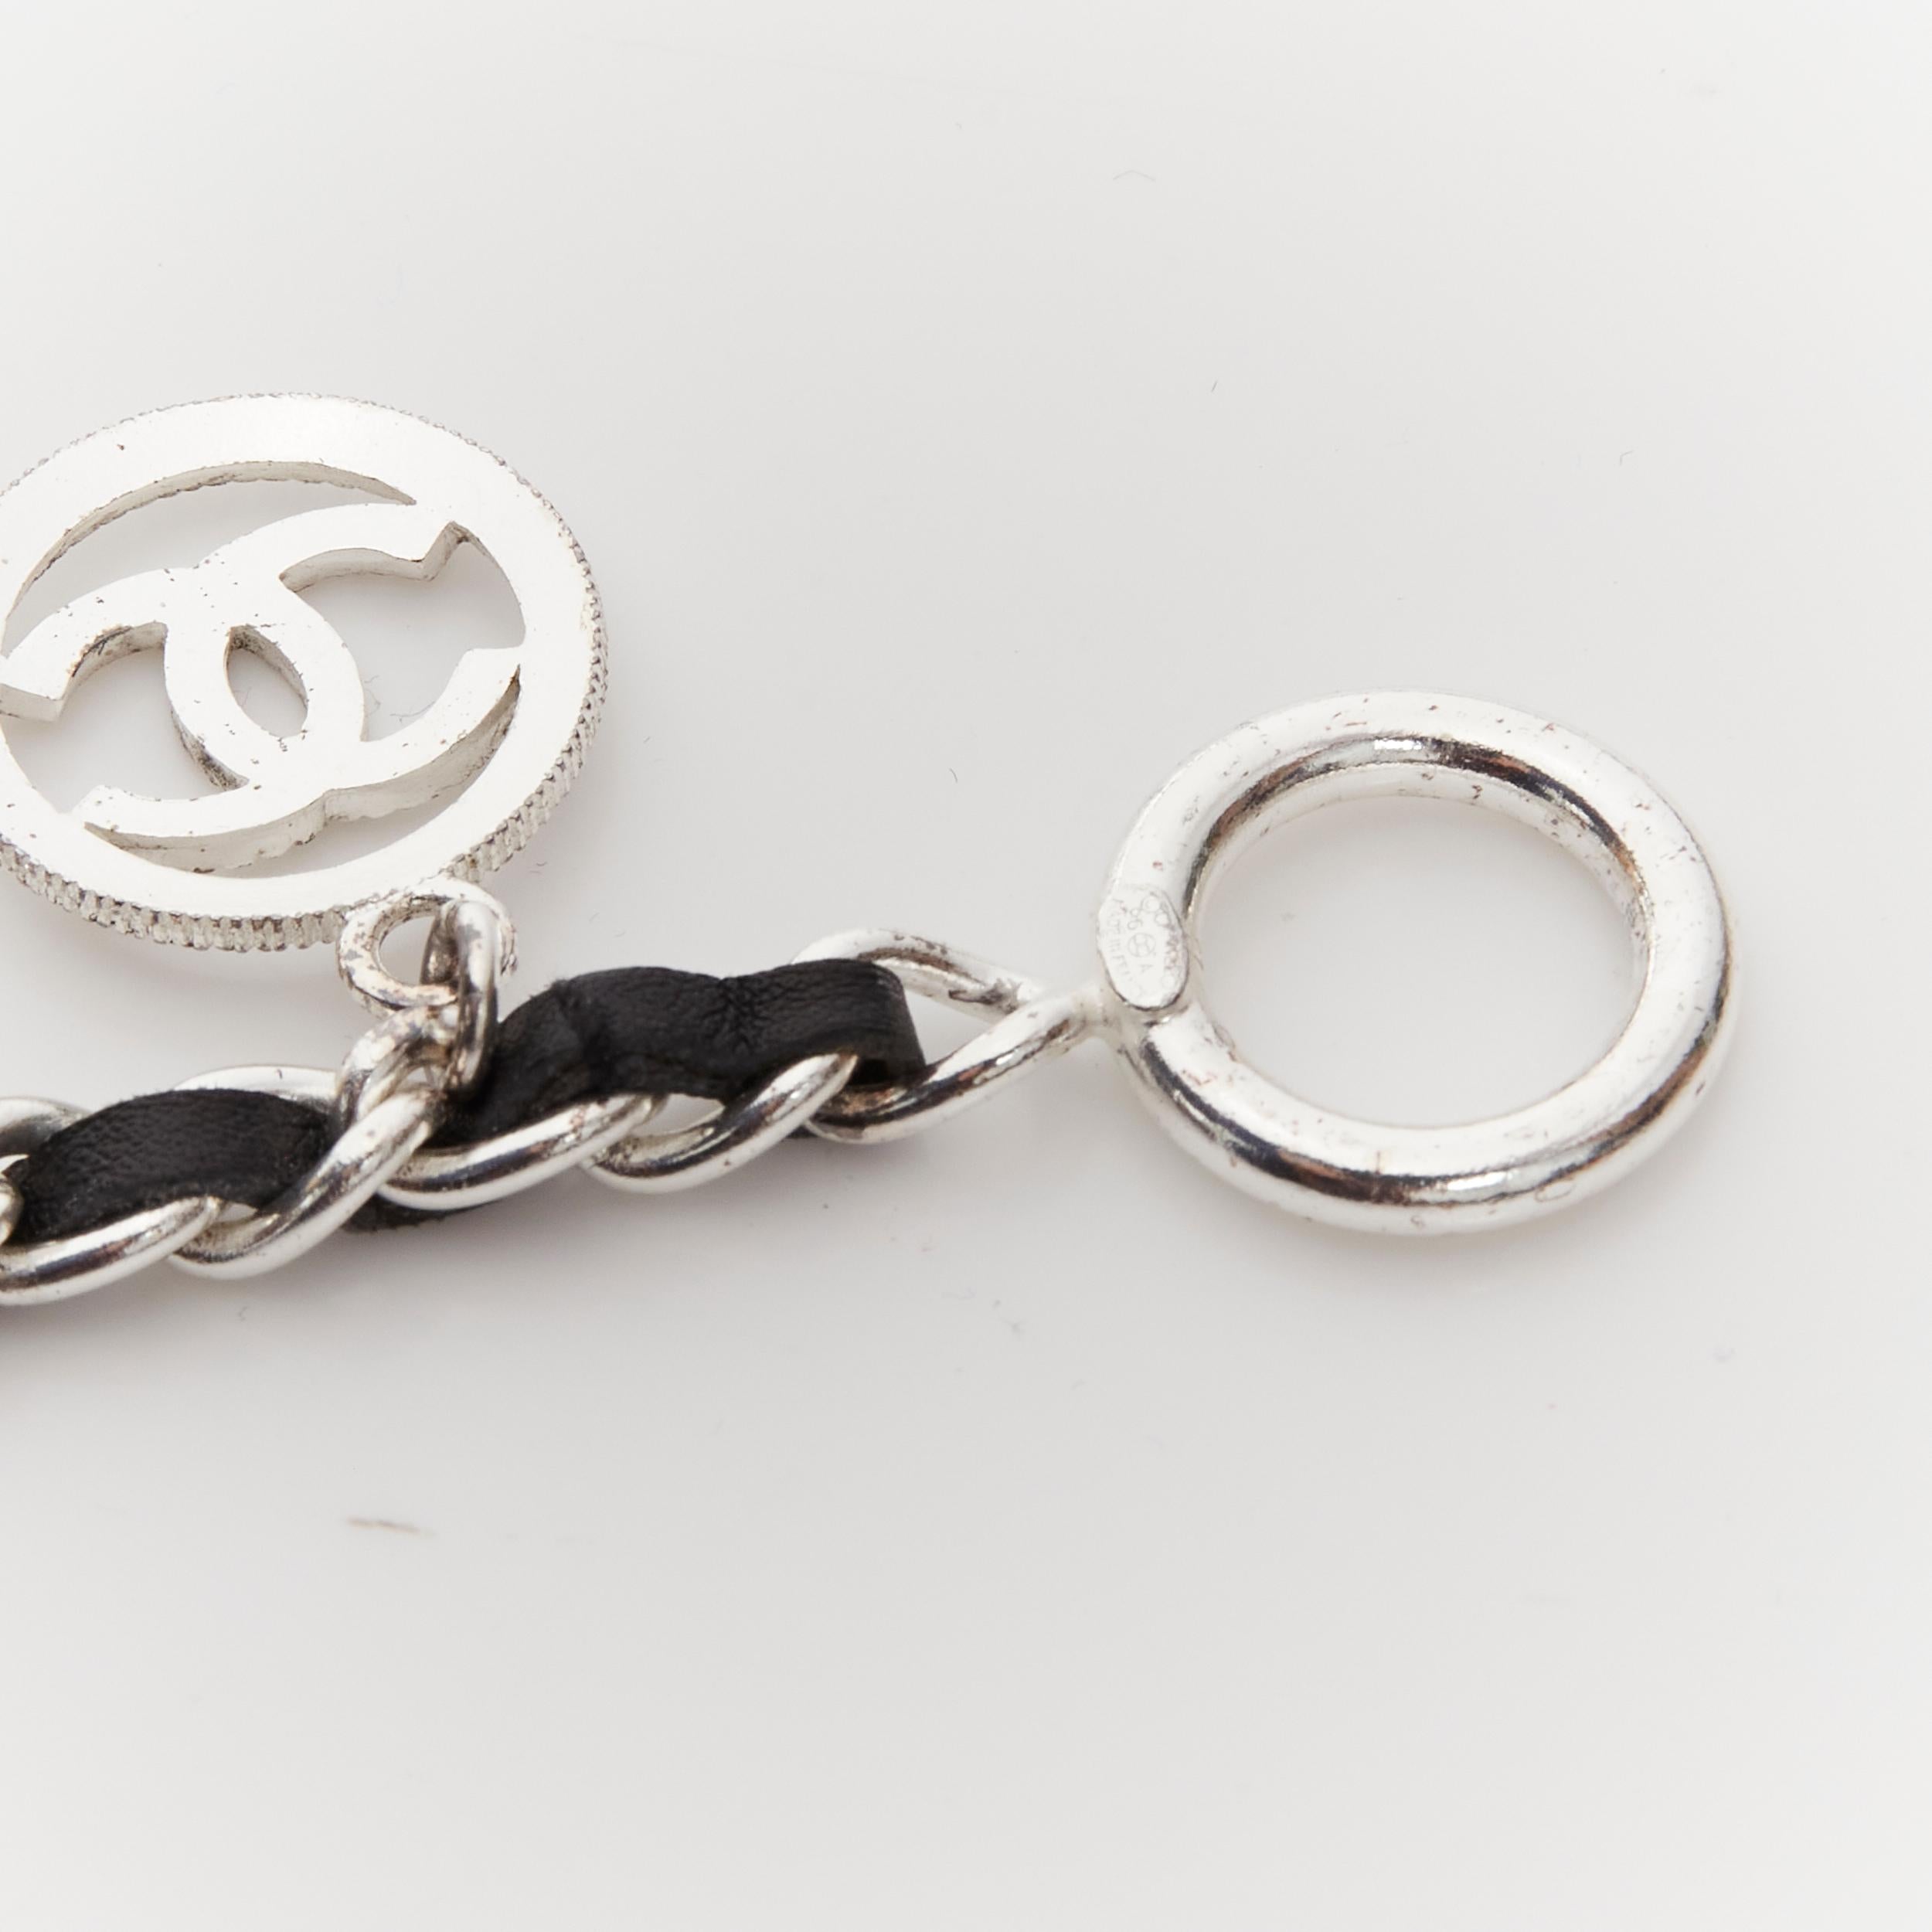 CHANEL 96A black leather silver CC logo Paris 31 Rue Cambon charm bracelet 2